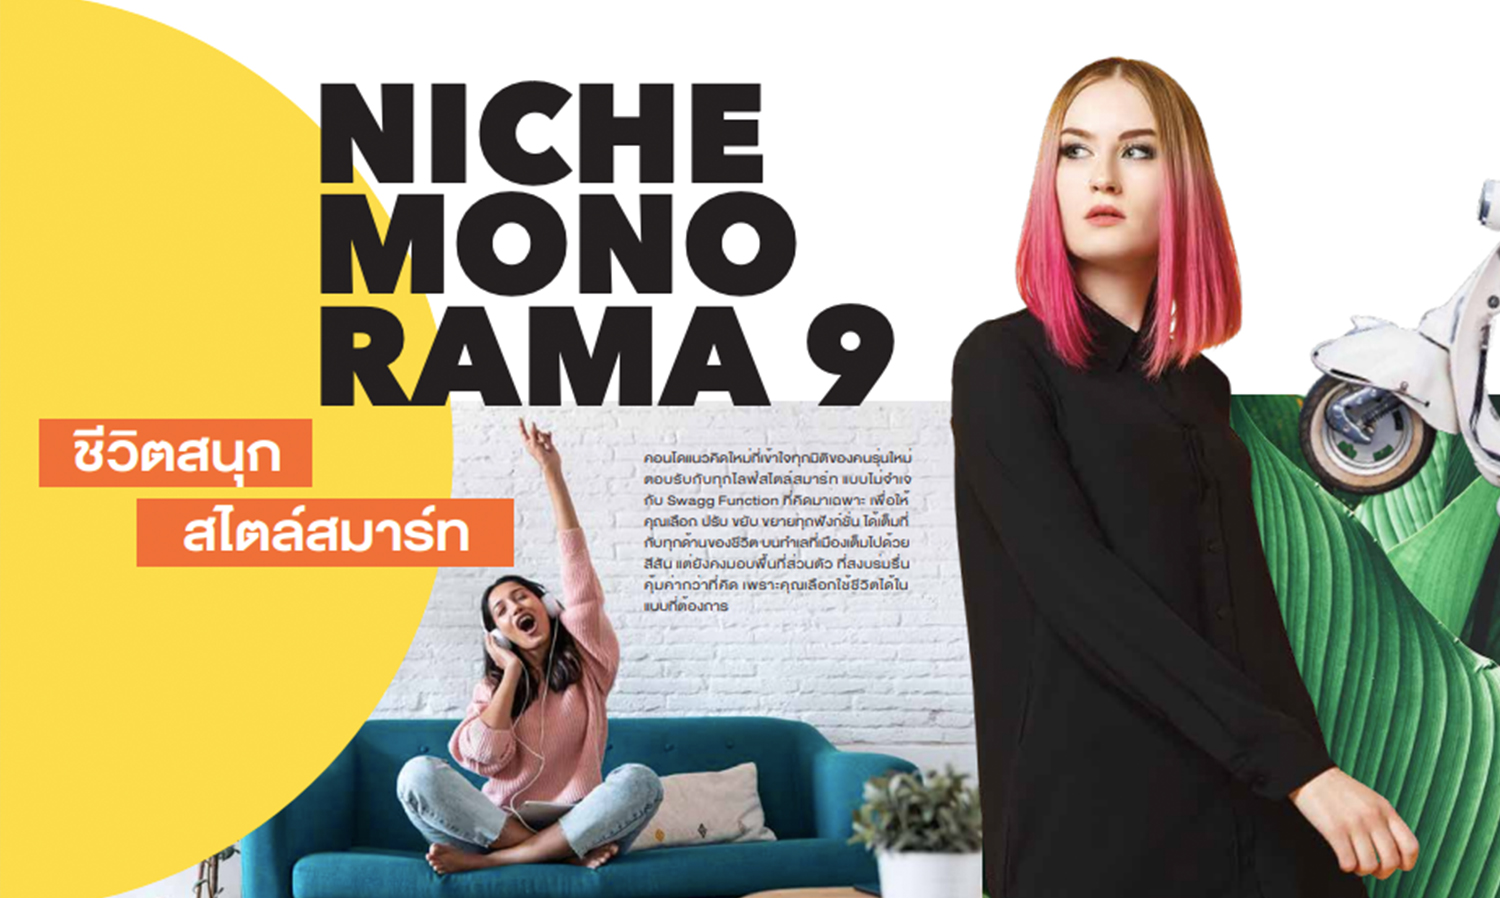 Niche MONO Rama 9 ชีวิตสนุก สไตล์สมาร์ท นิวส์แลนด์มาร์คใจกลางพระราม 9